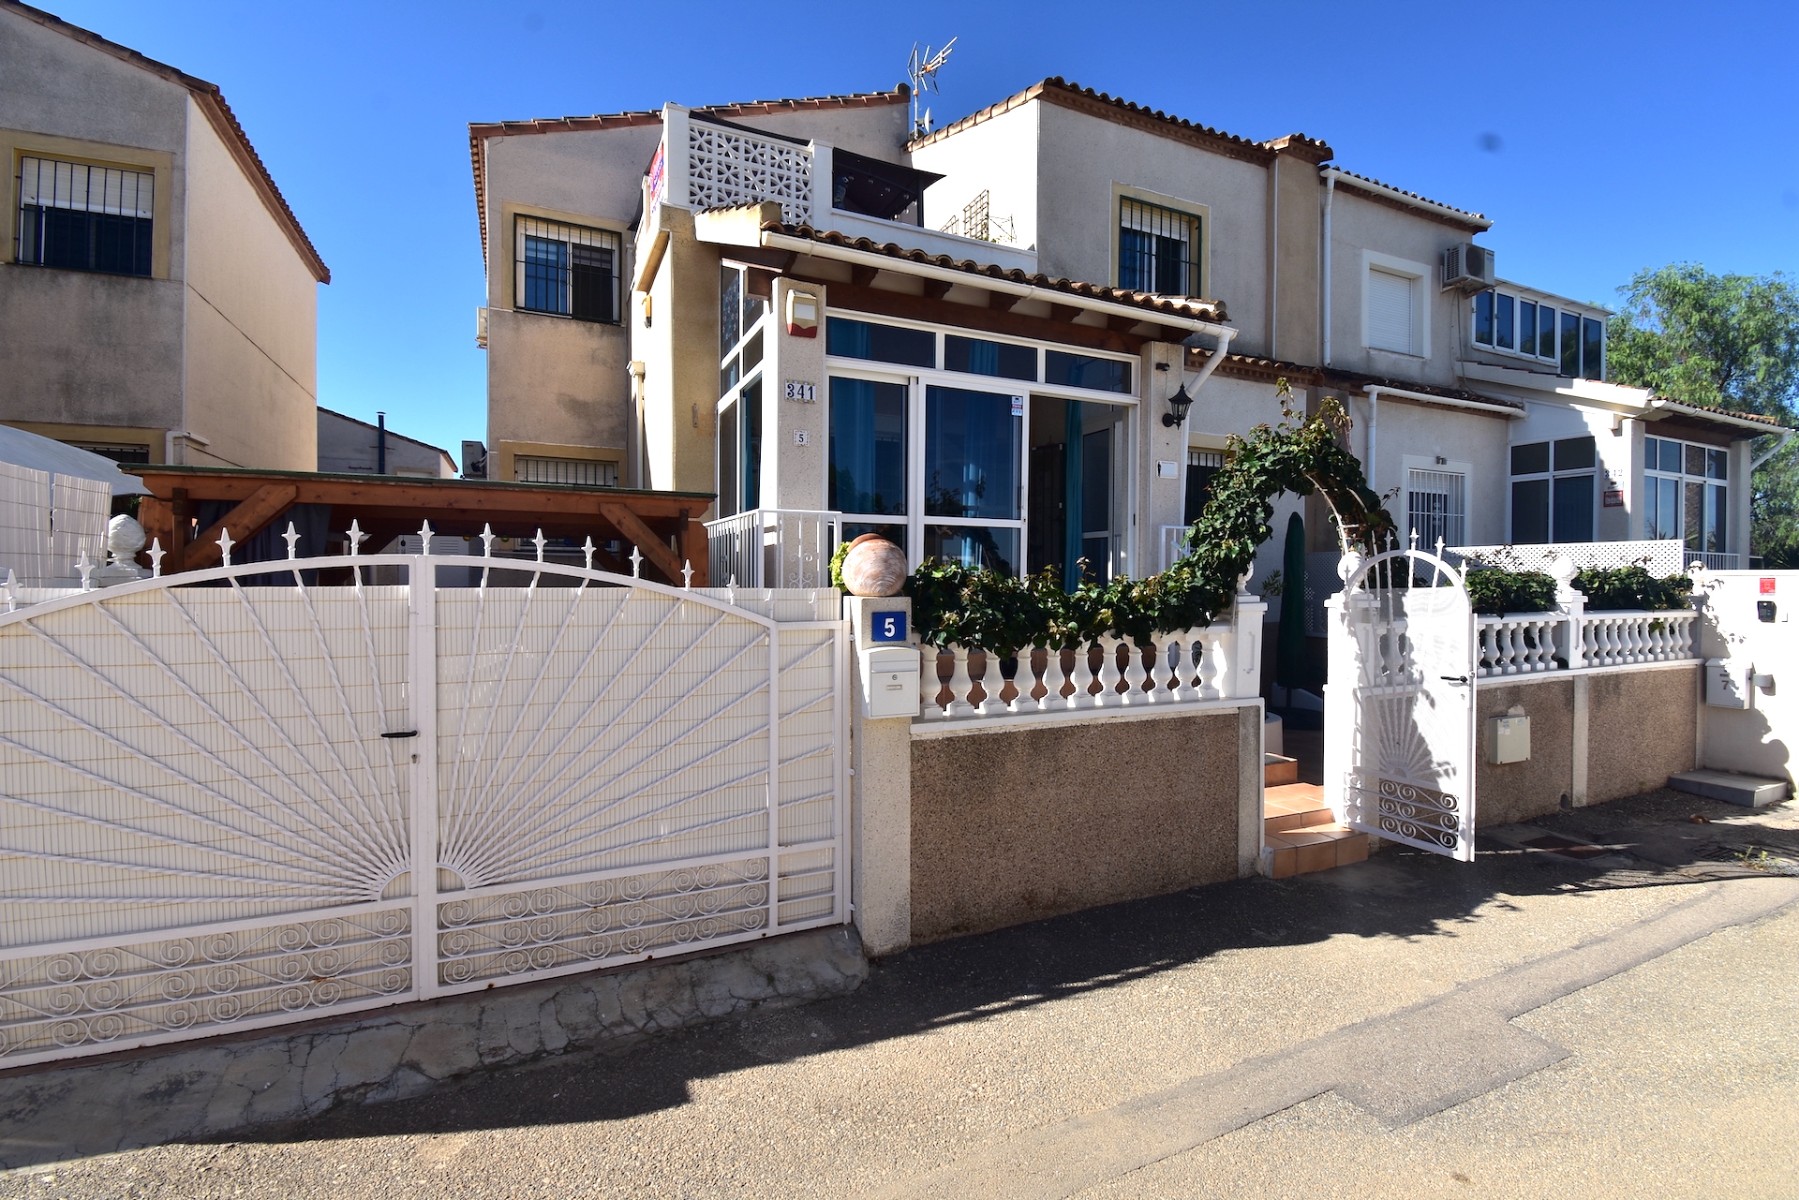 For sale: 3 bedroom house / villa in Algorfa, Costa Blanca